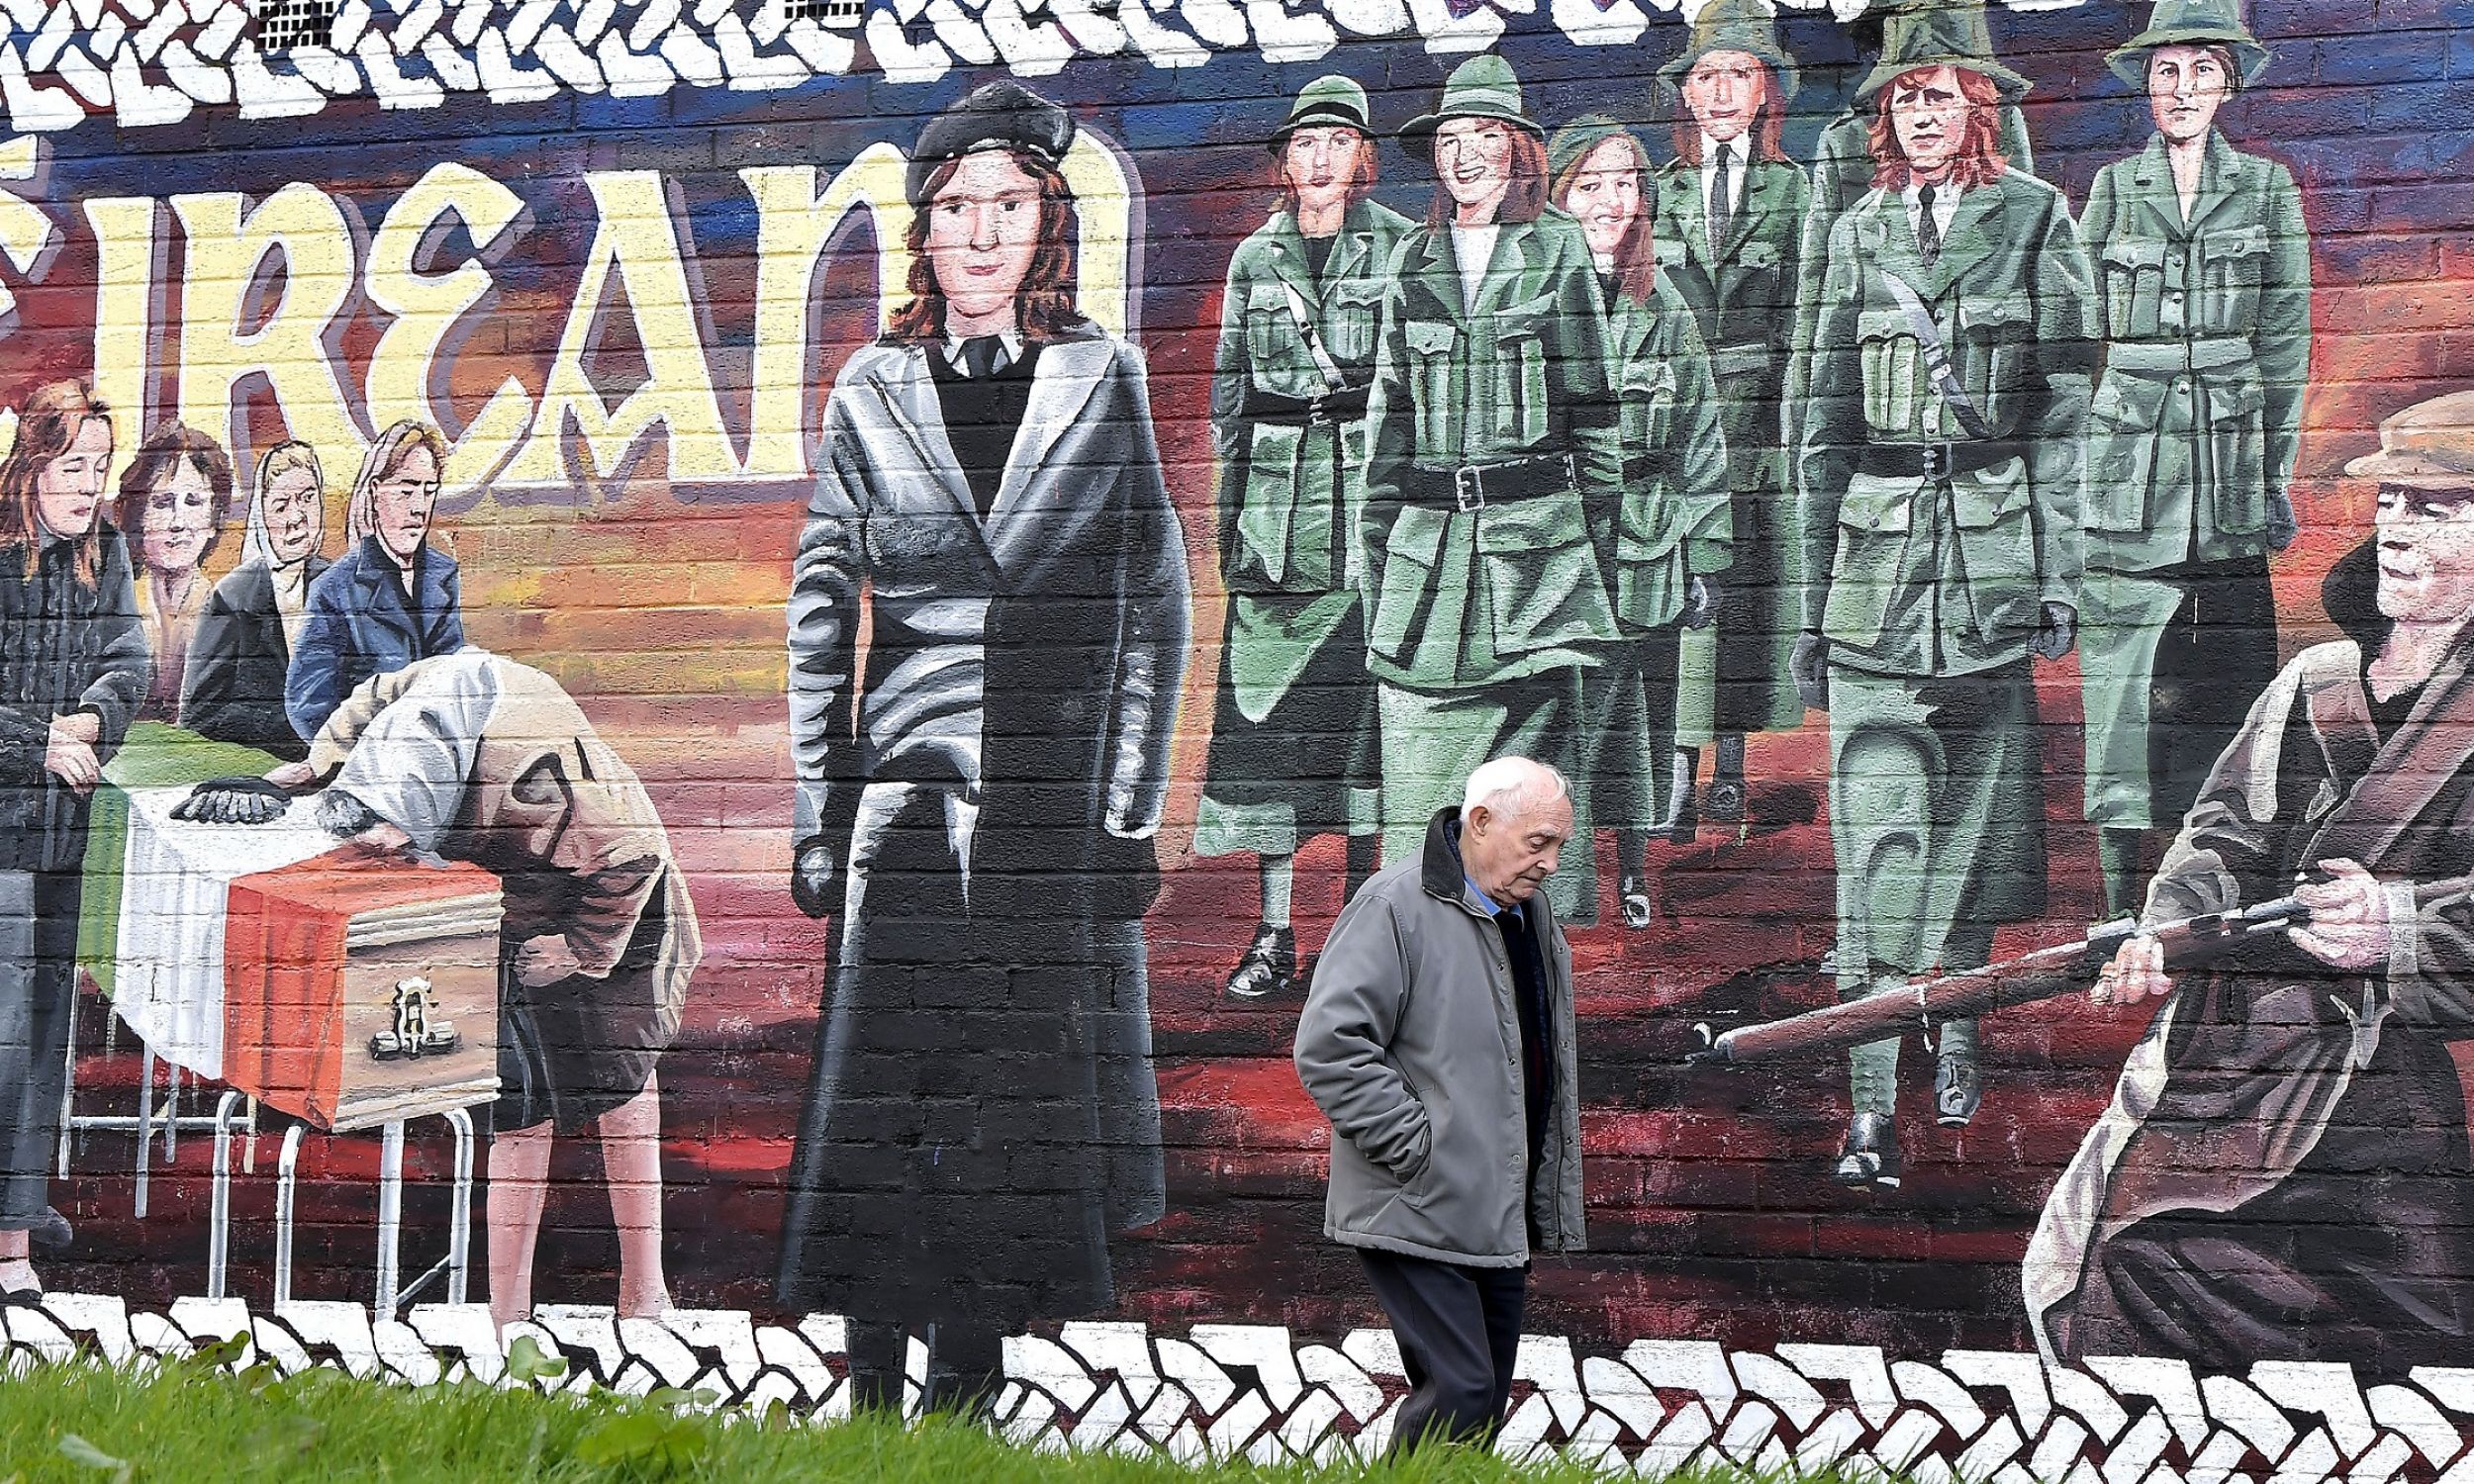 Mural w Londonderry, w Irlandii Północnej, w marcu 2017 r. koło domu zmarłego właśnie działacza Sinn Fein Martina McGuinnessa. Były bojownik IRA. W czasie „krwawej niedzieli” ( 30 stycznia 1972 r. żołnierze brytyjscy zabili 14 uczestników pokojowego marszu) był zastępcą dowódcy lokalnych struktur IRA. W latach 70. więziony. W latach 90. główny negocjator Sinn Féin pokojowego porozumienia wielkopiątkowego. Od 2007 r. był zastępcą pierwszego ministra Irlandii Północnej. Fot. Charles McQuillan/Getty Images